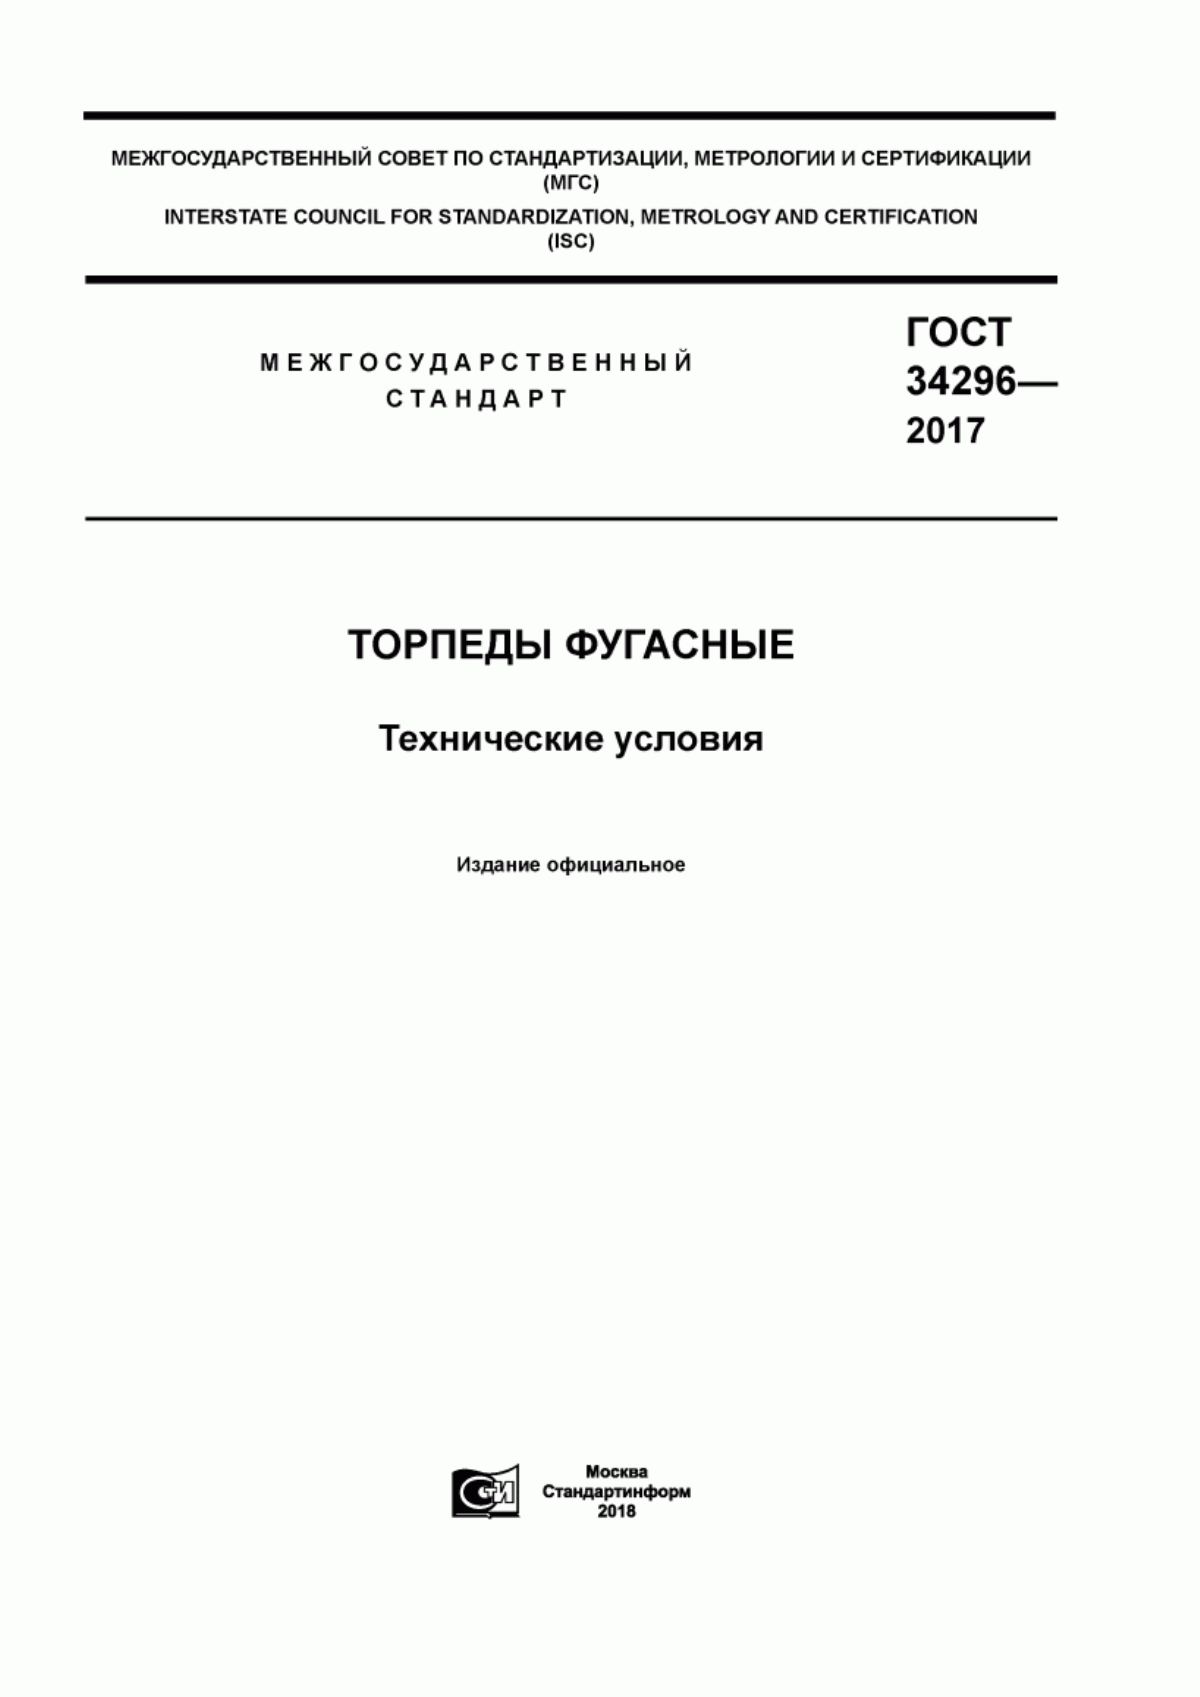 ГОСТ 34296-2017 Торпеды фугасные. Технические условия